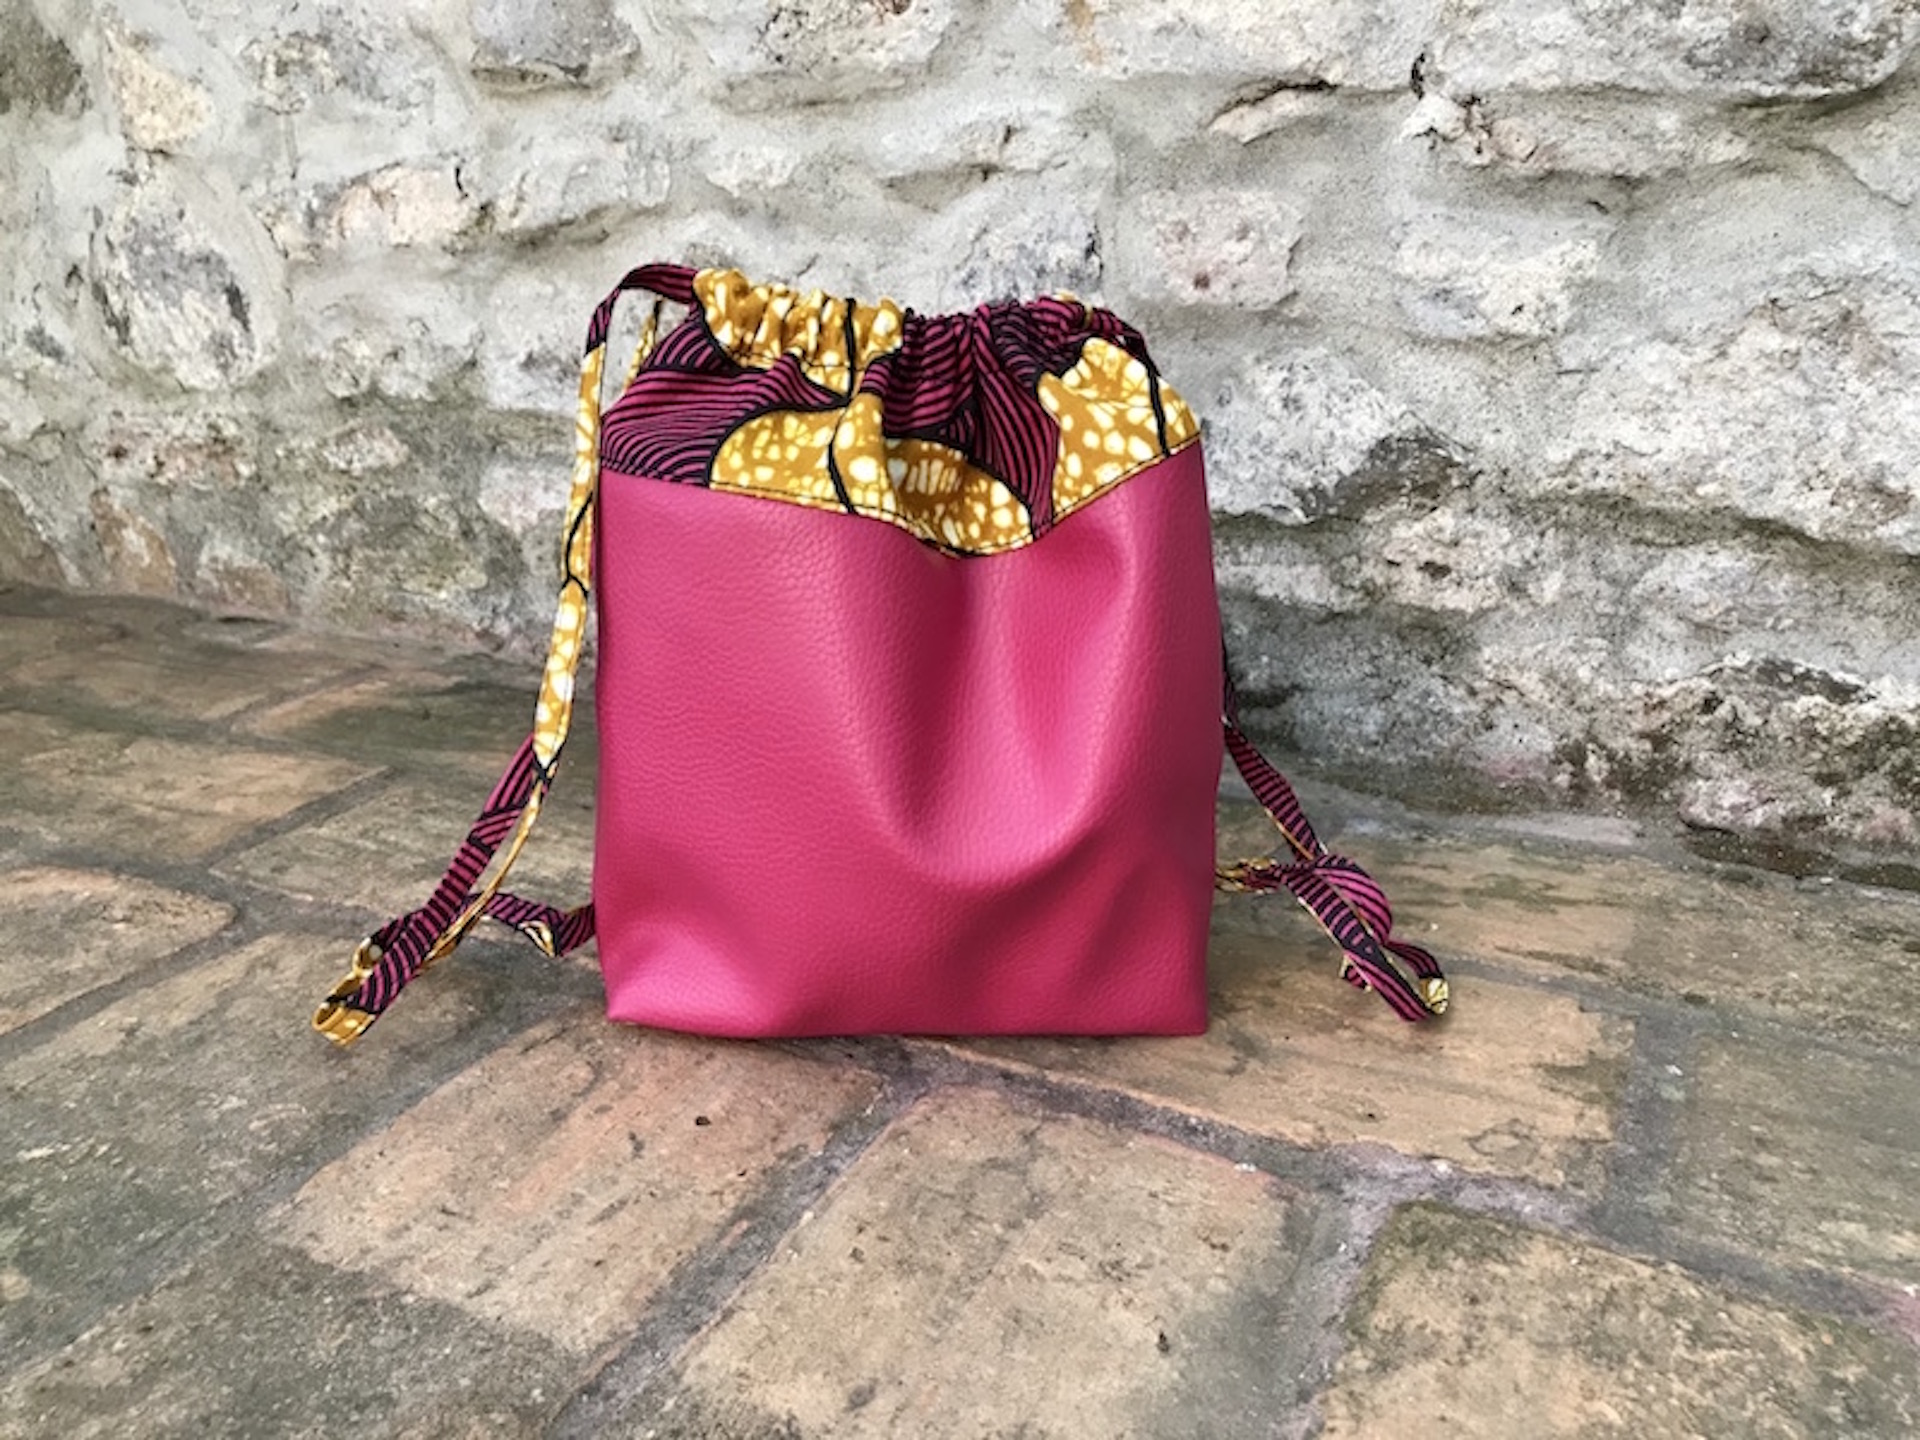 Una borsa creata dalla sartoria Agave